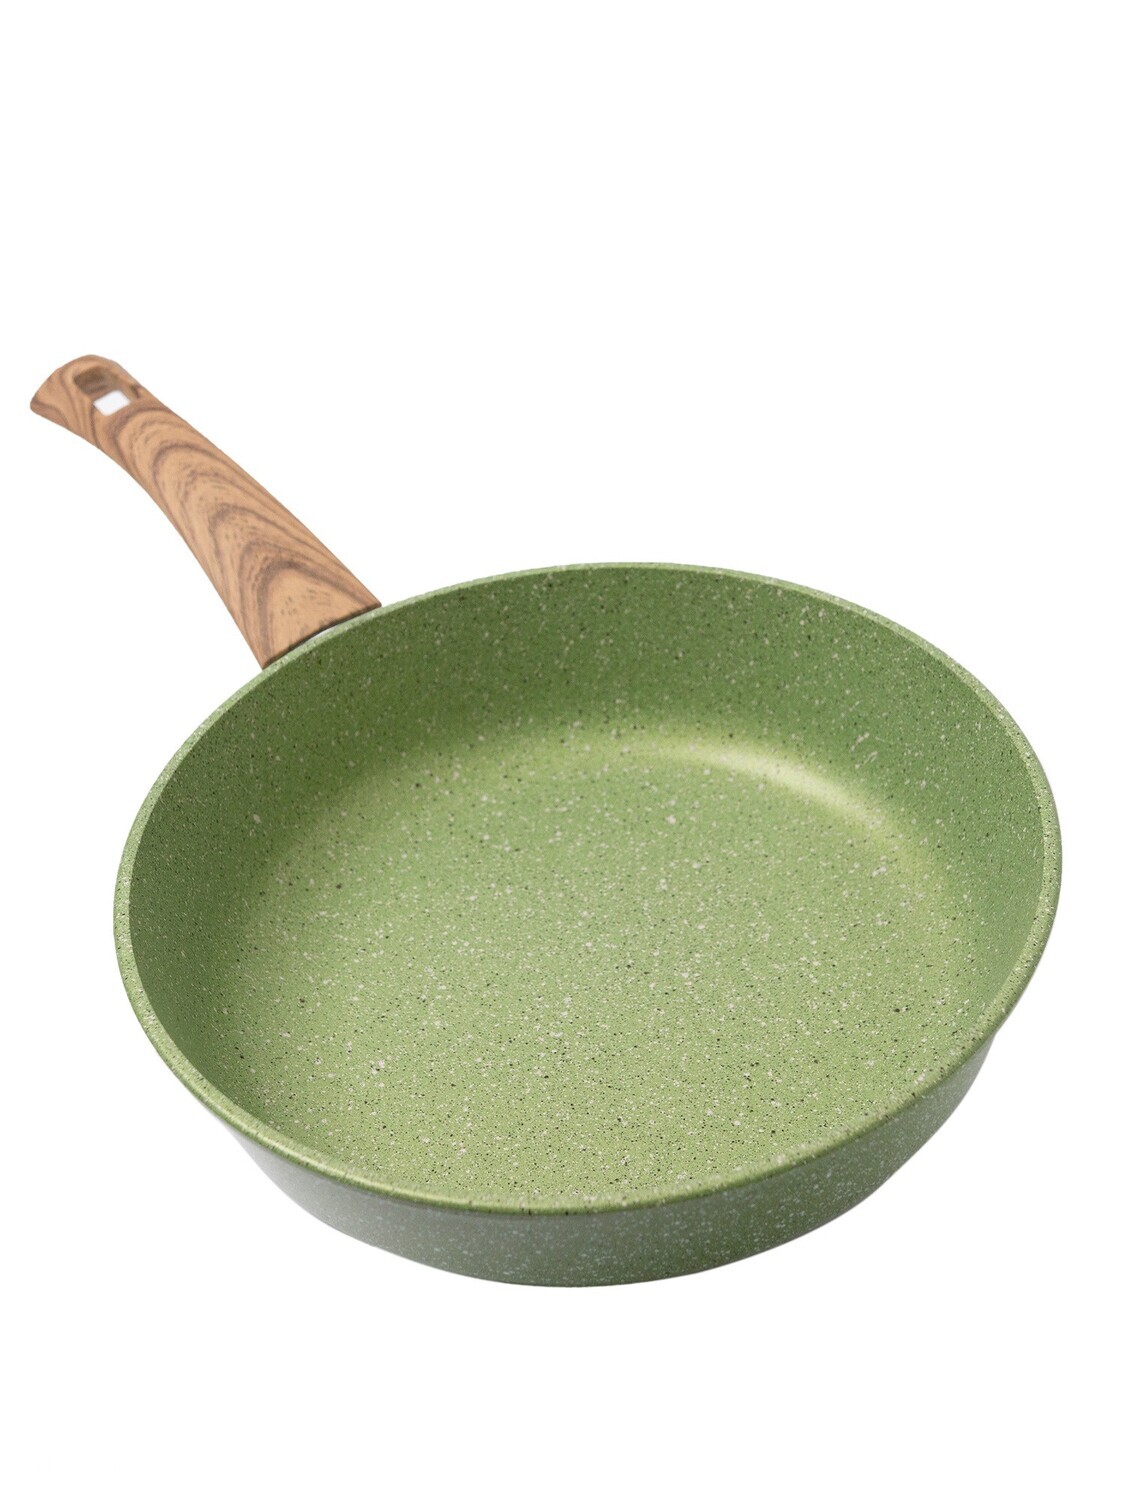 Сковорода литая Сила природы с антипригарным покрытием, зеленая 24 см